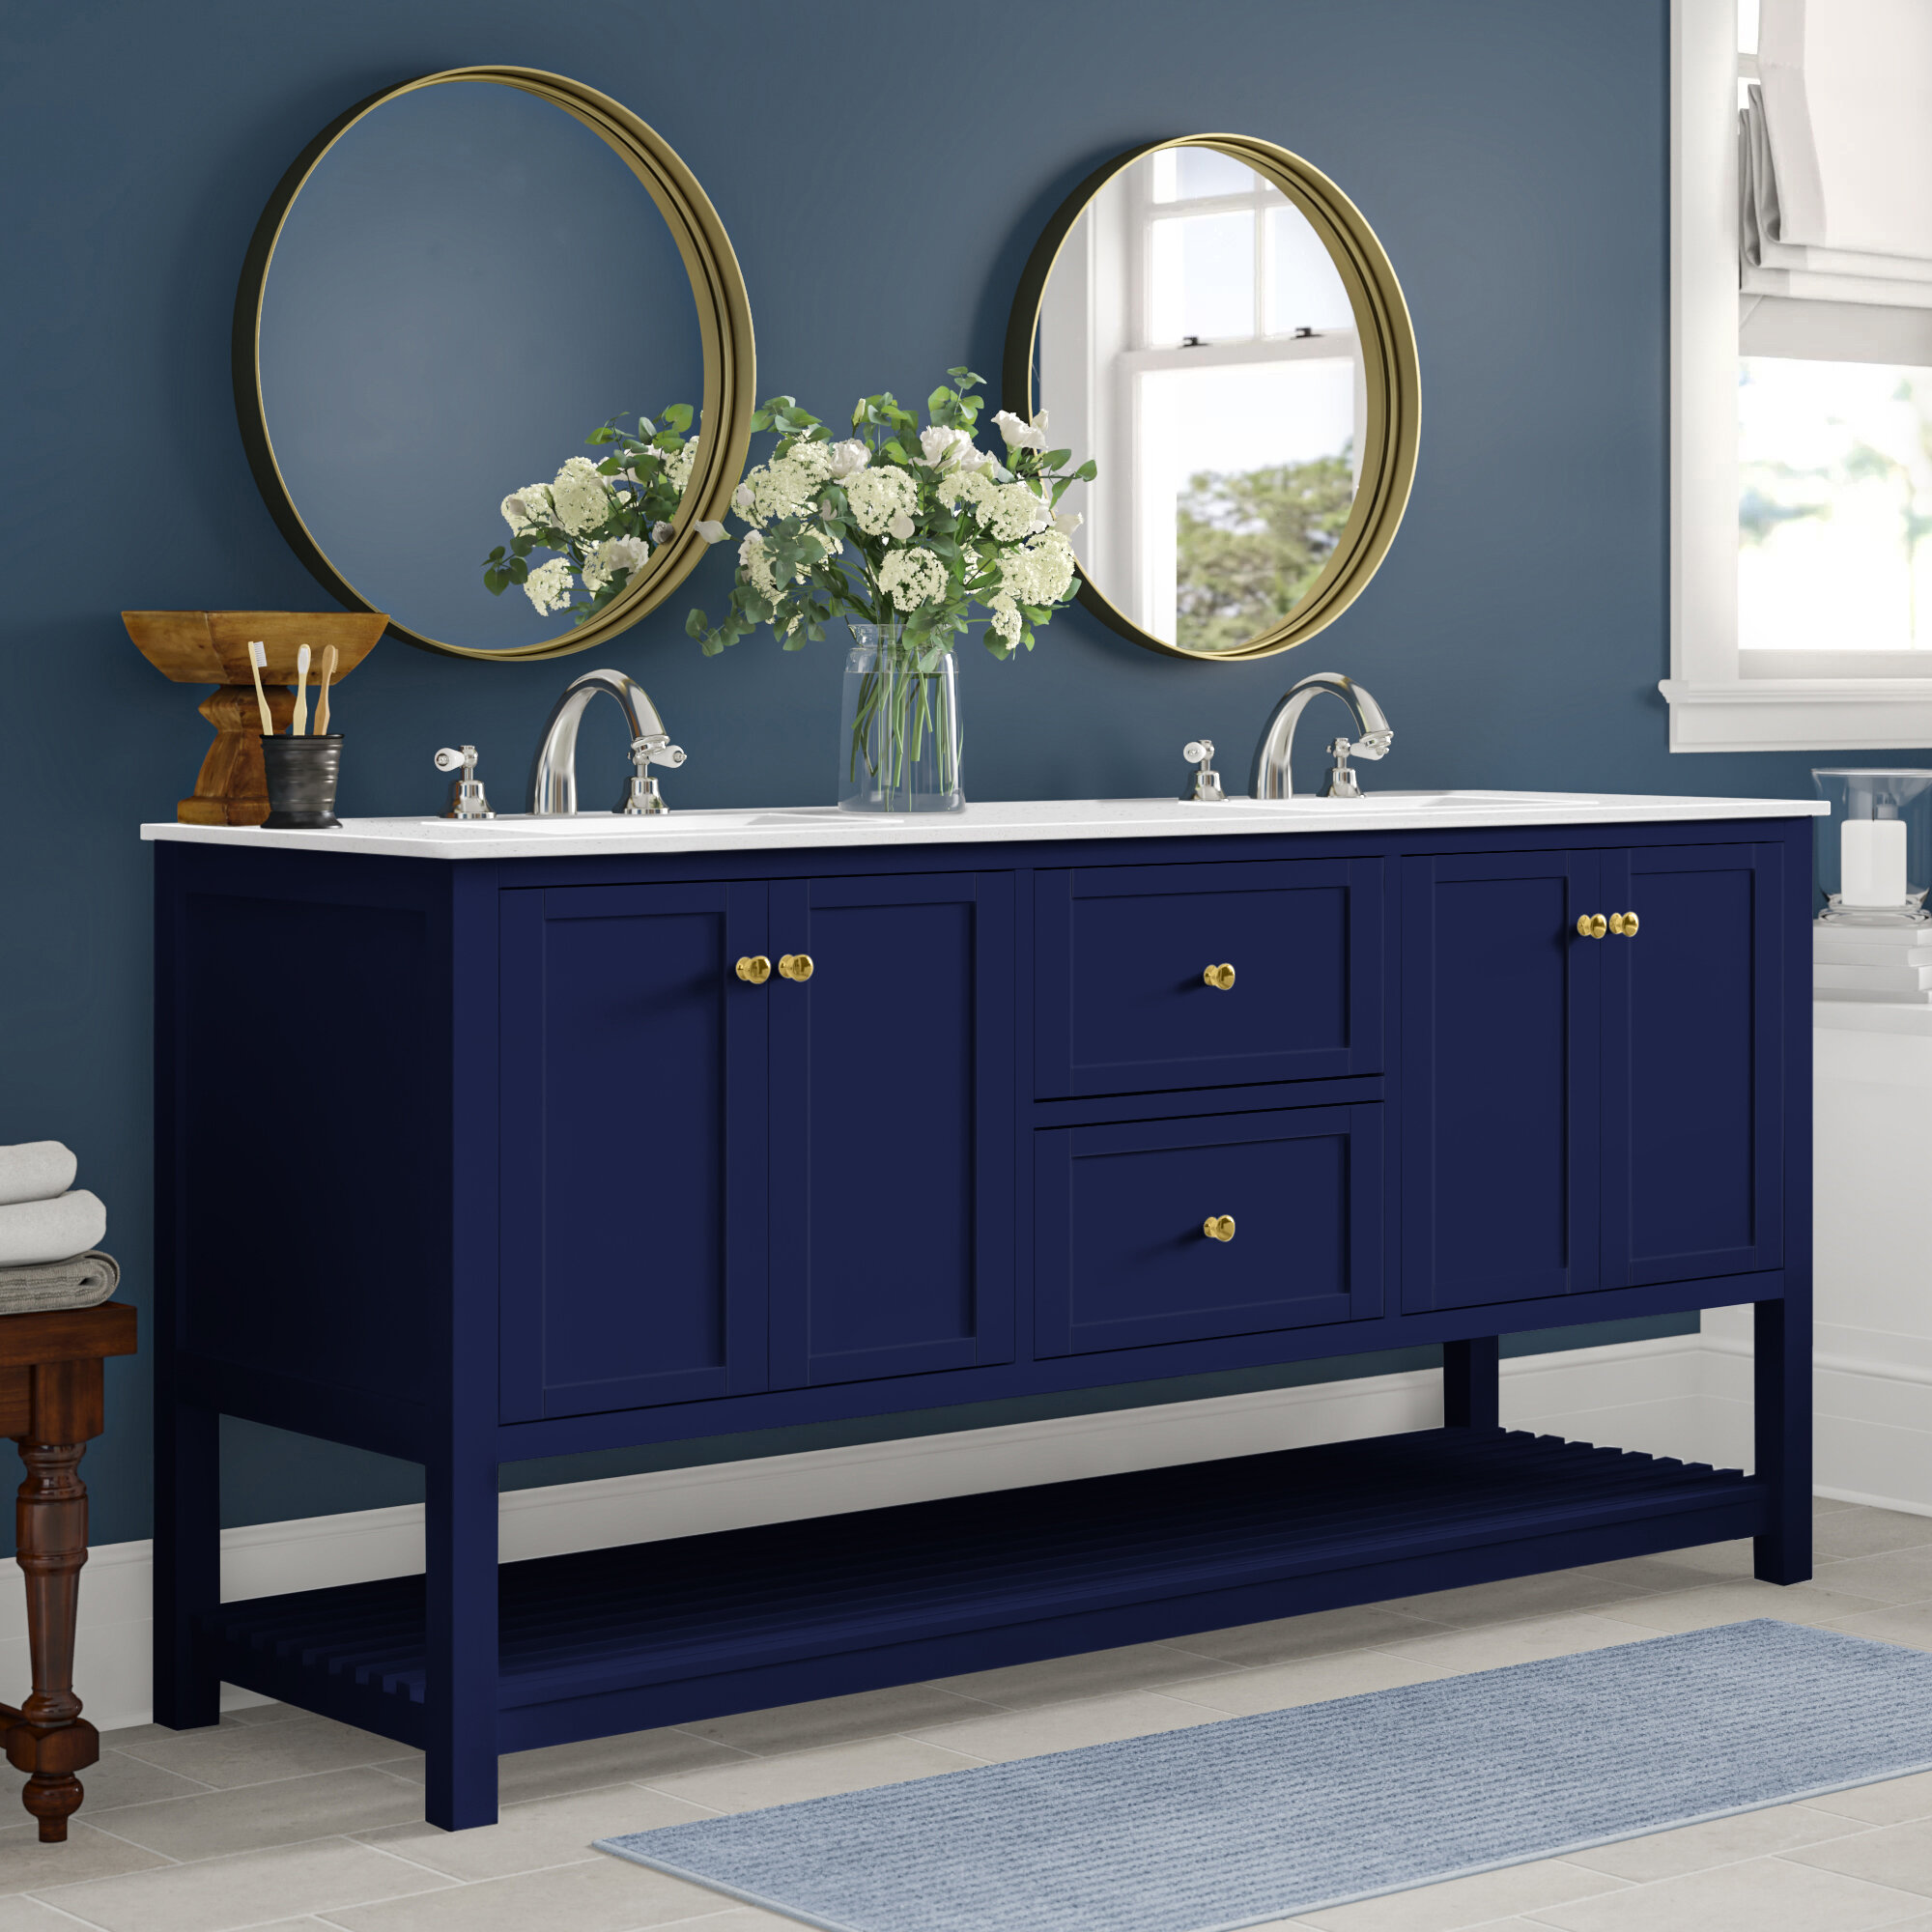 Three Posts Binne 72 Double Bathroom Vanity Set Reviews Wayfair